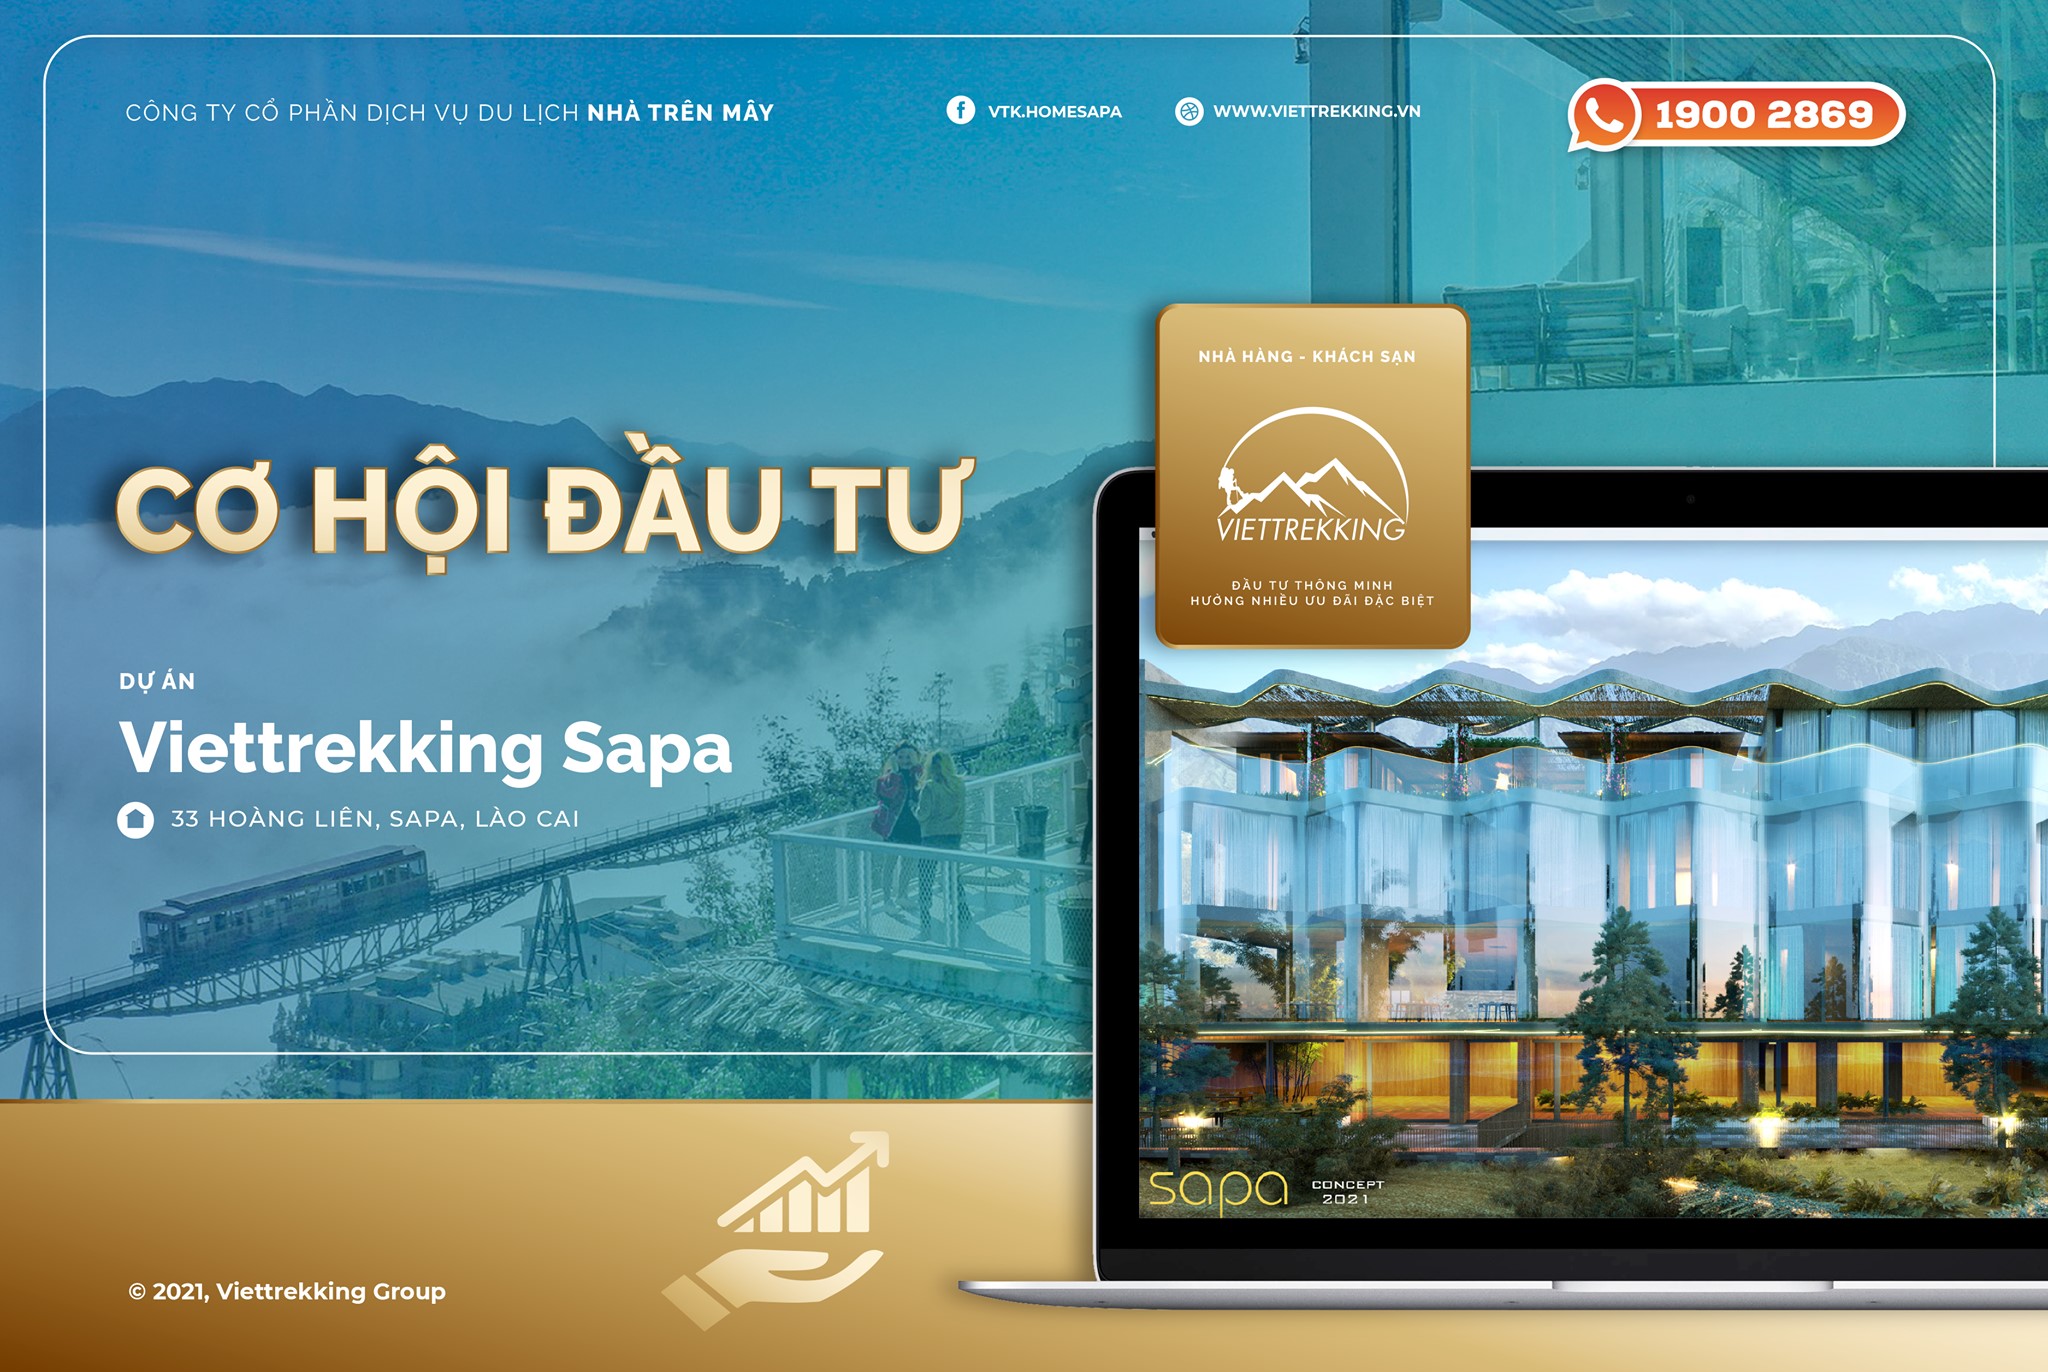 Cơ hội đầu tư vào Viettrekking homestay Sapa